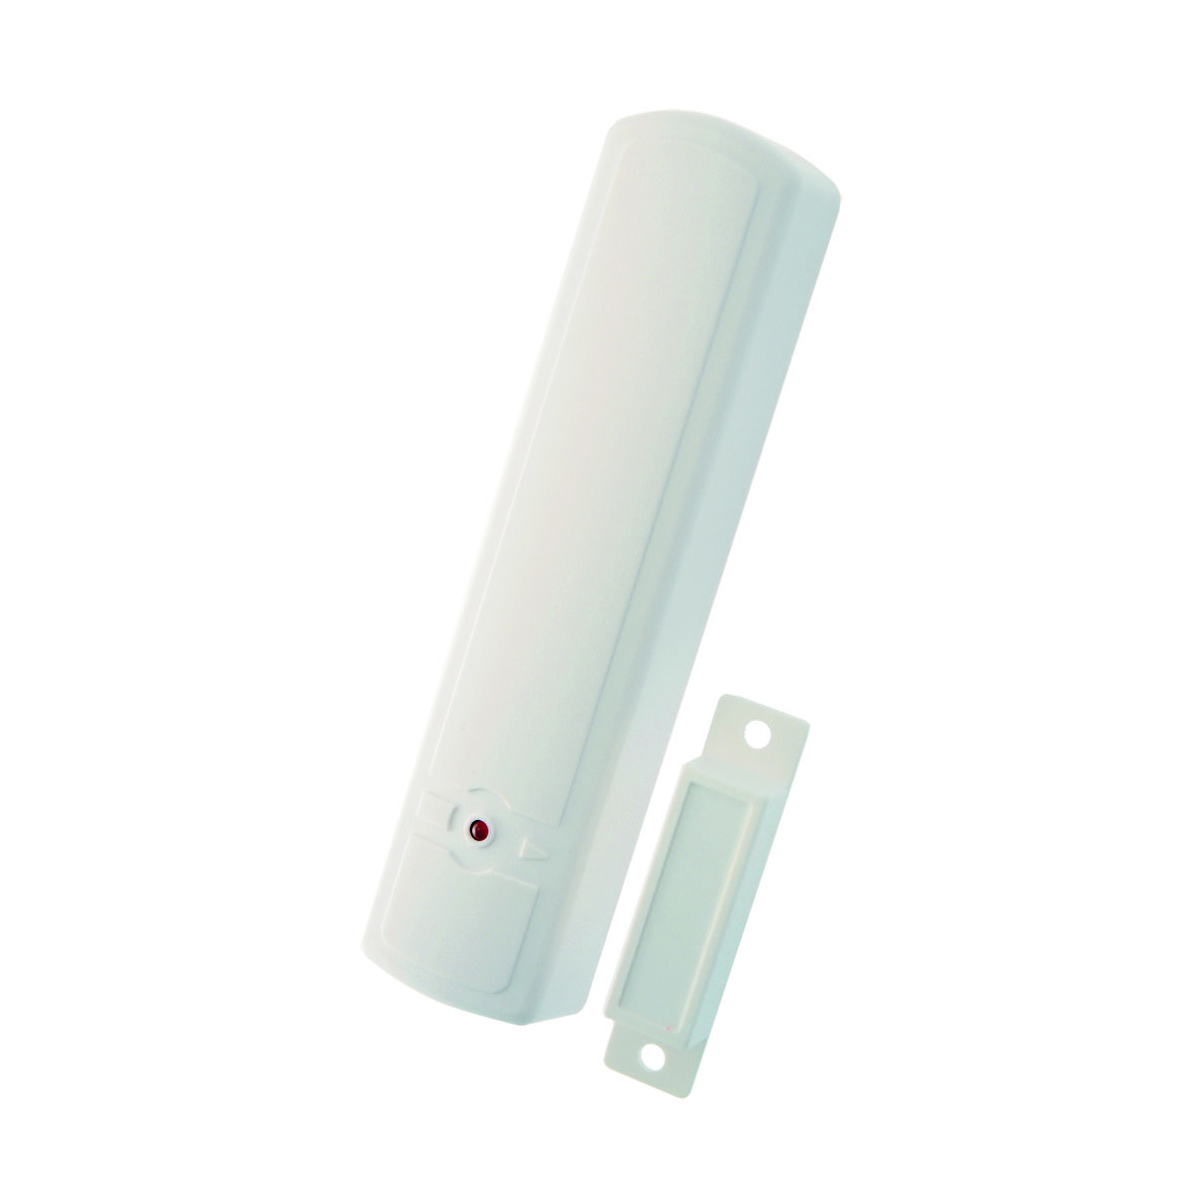 Contatto magnetico urmet 1059/201 per antifurto wireless bianco